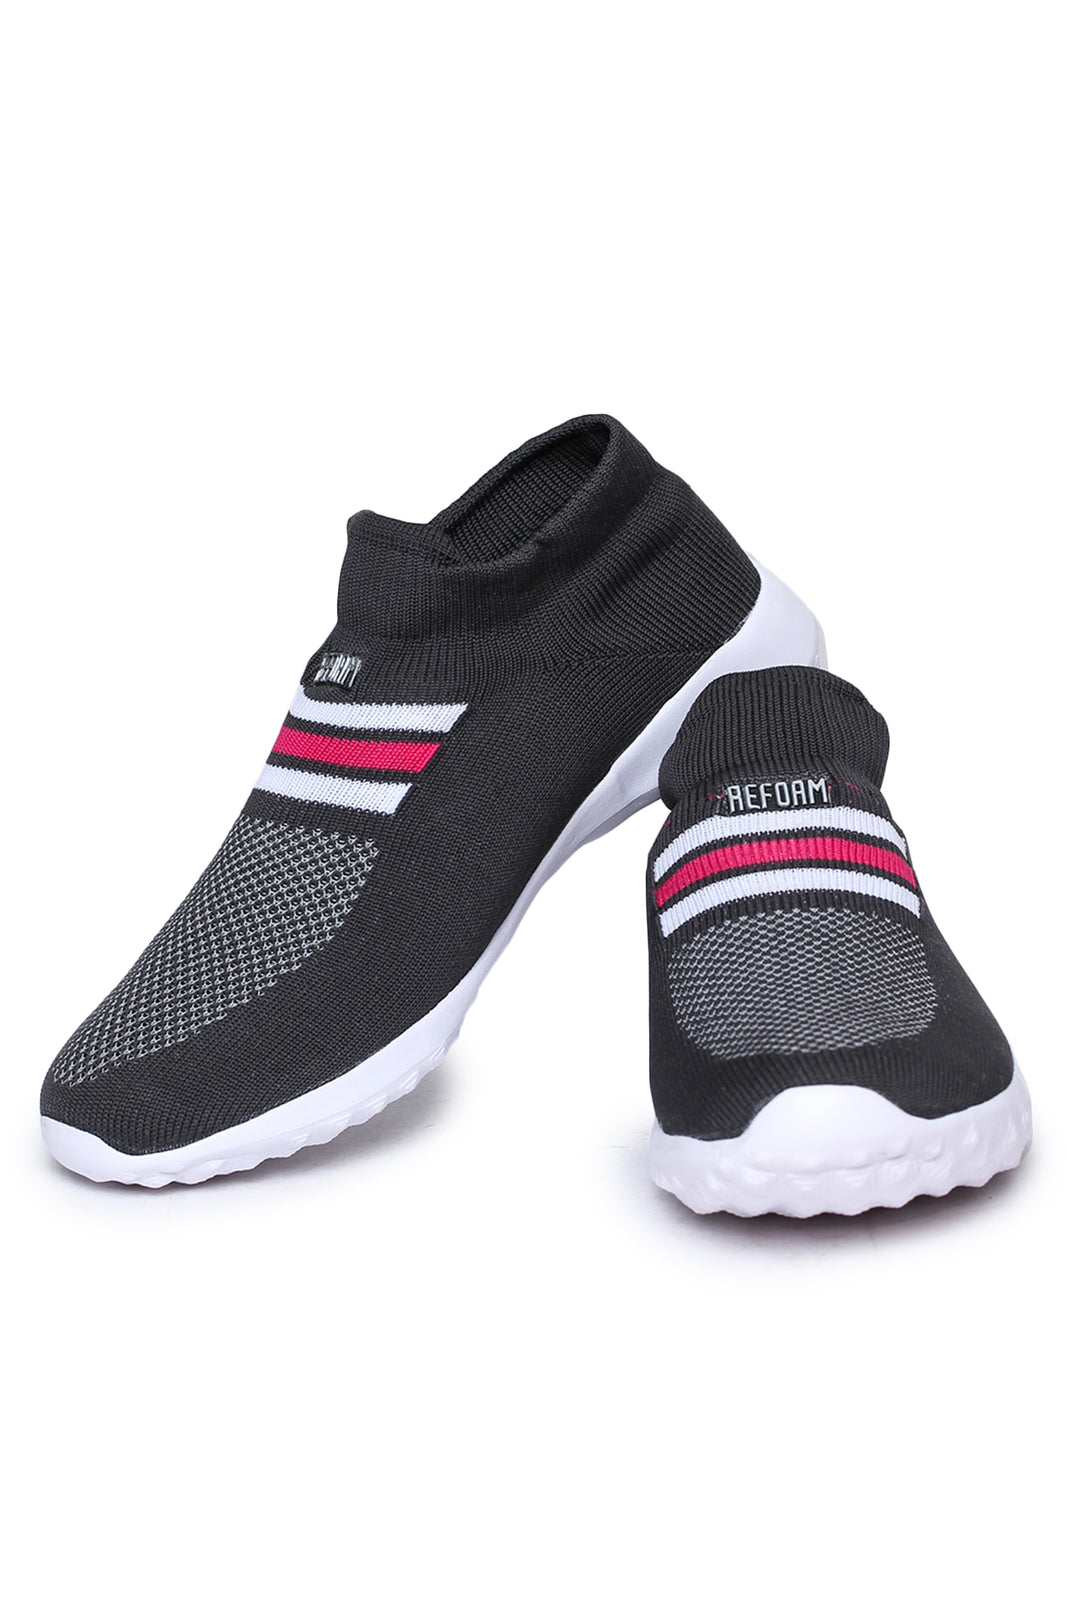 Black Solid Mesh Slip On Running Sport Shoes For Women